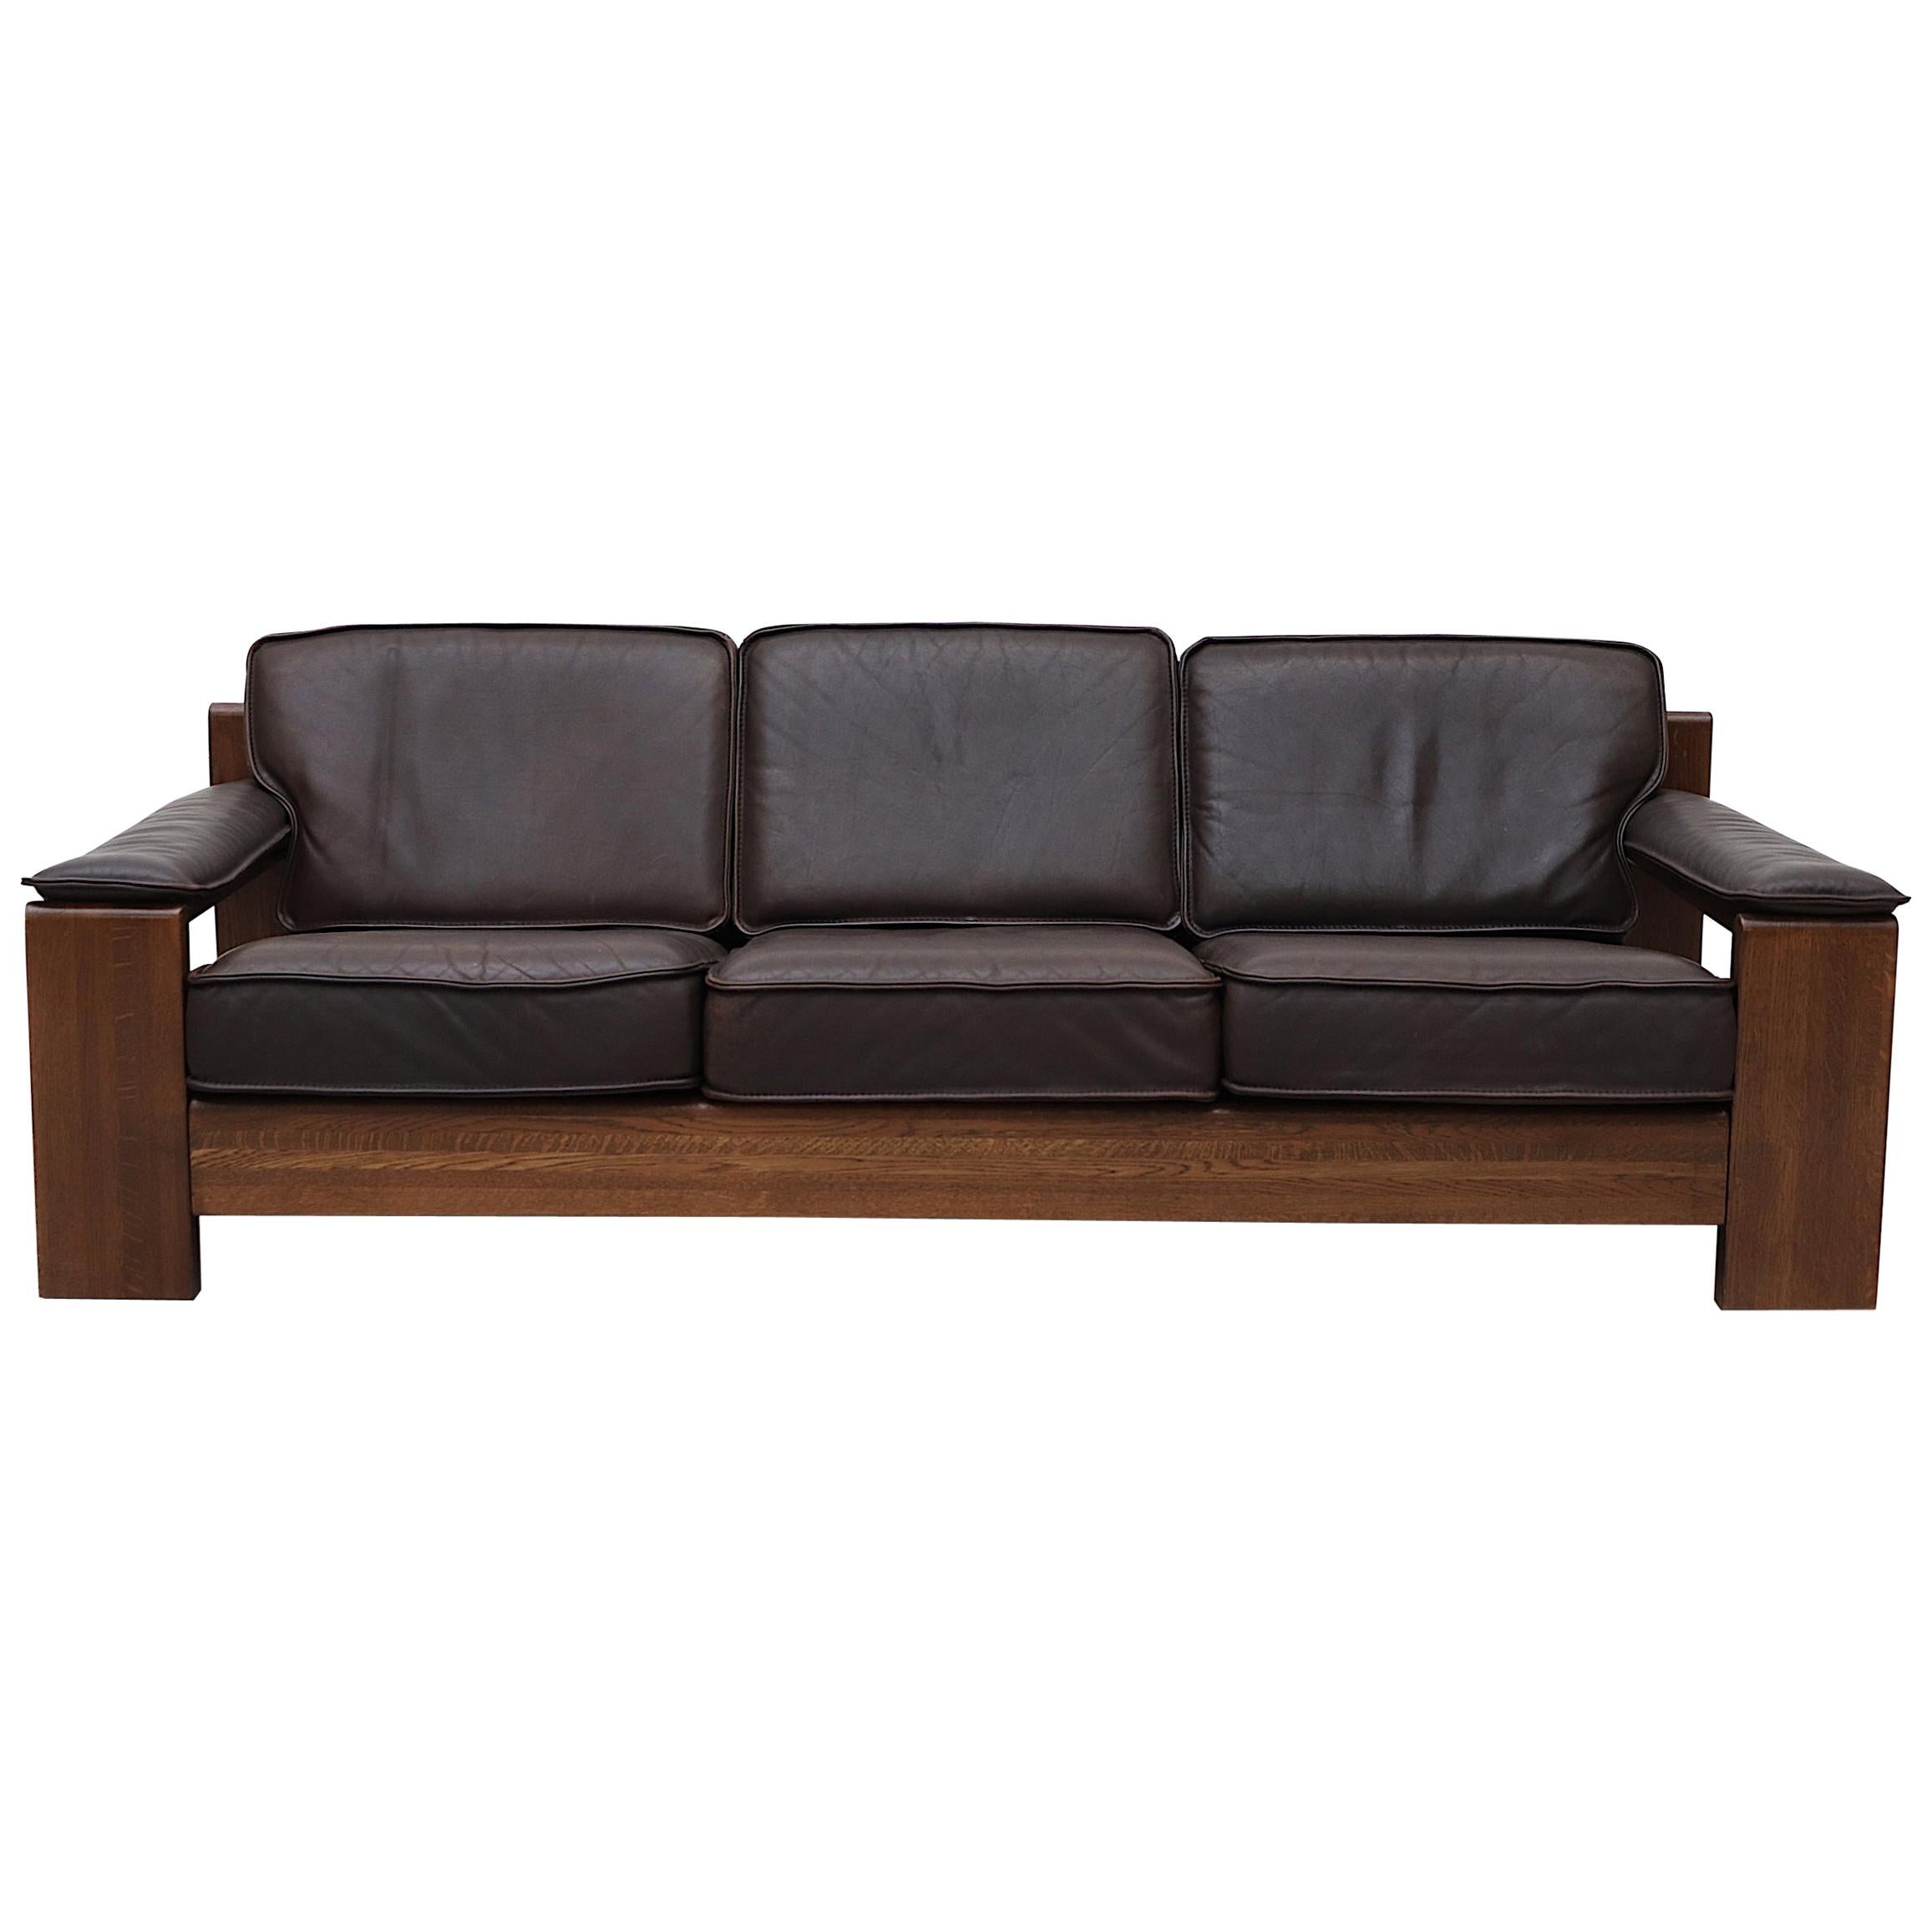 Leolux 3 Seater Leather and Oak Sofa